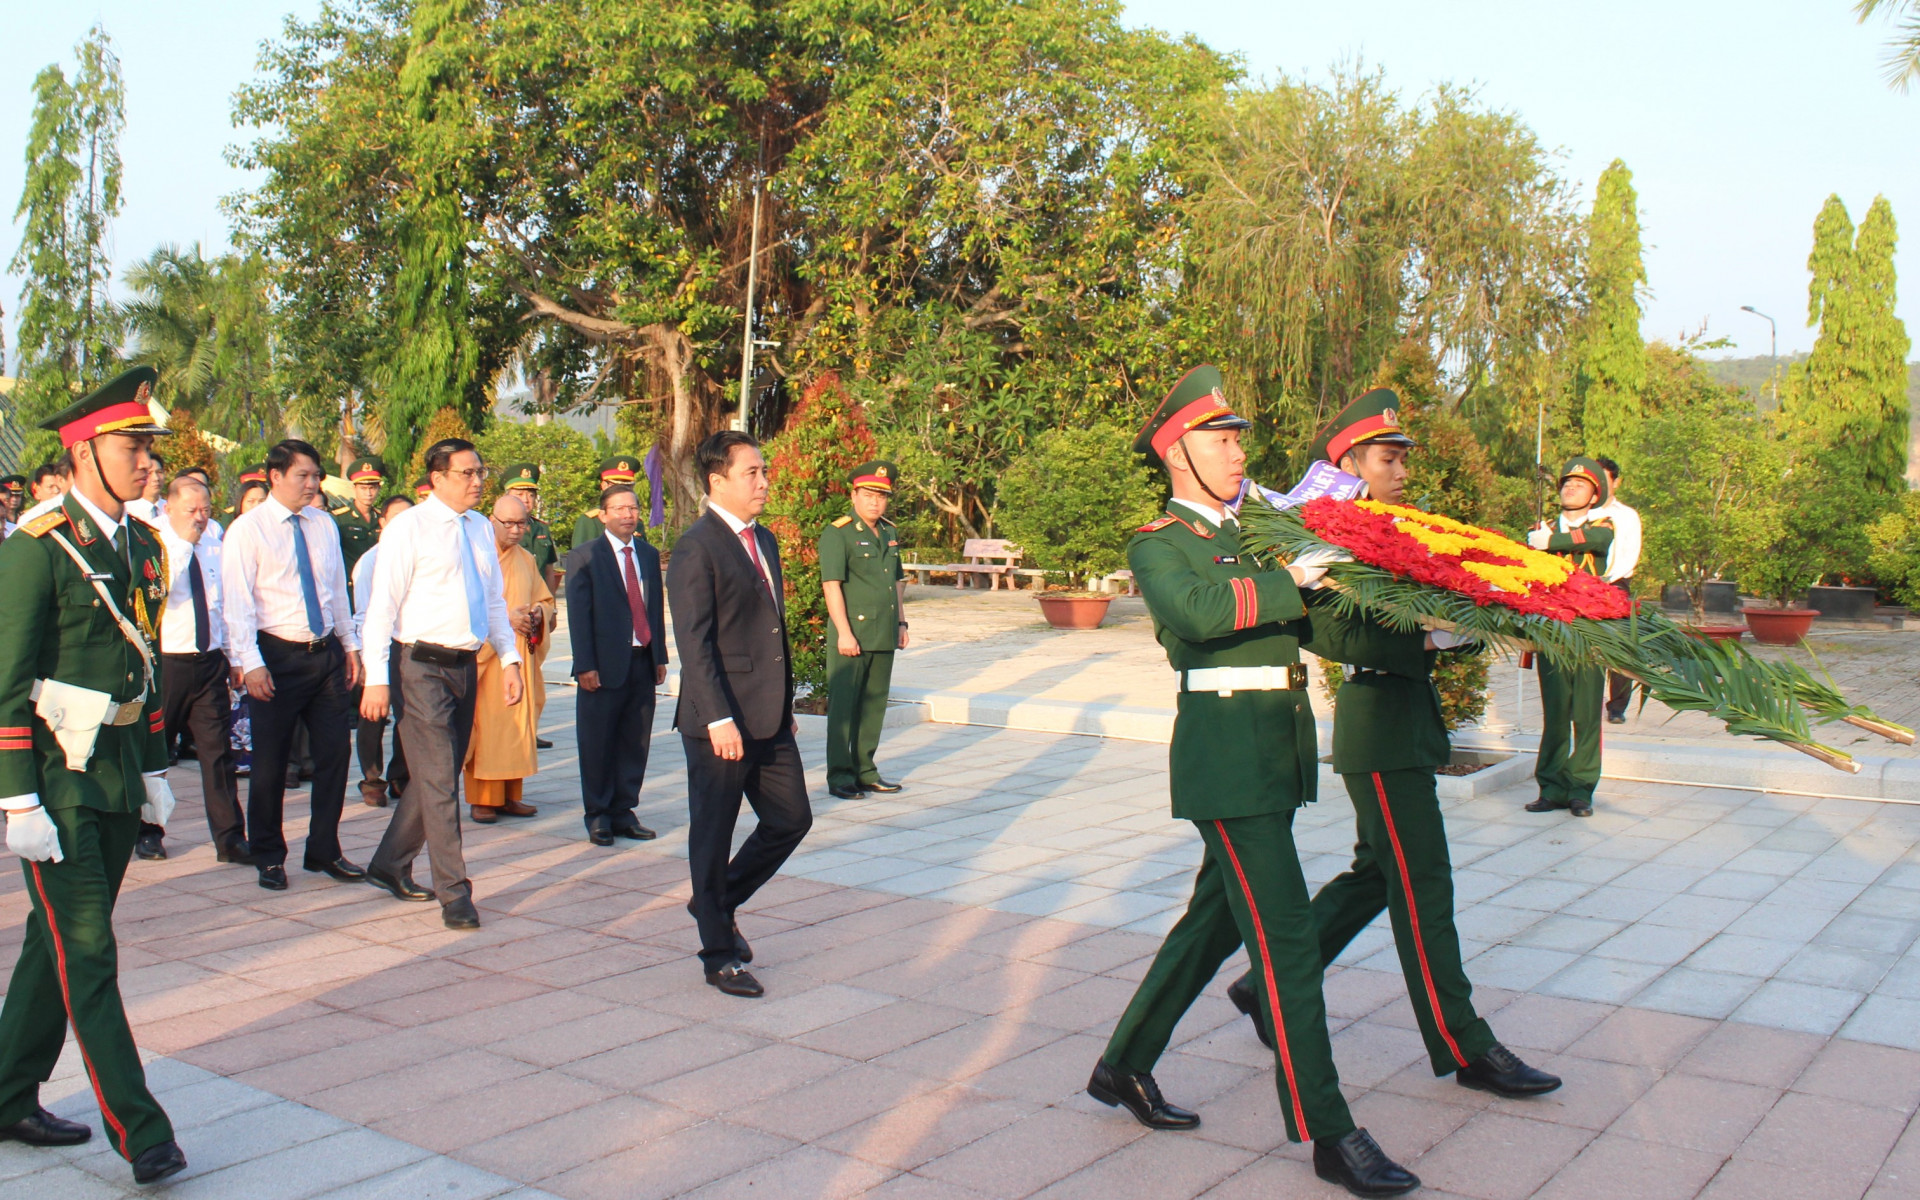 Đoàn đại biểu của Ban Chấp hành Đảng bộ tỉnh do ông Nguyễn Khắc Toàn dẫn đầu vào viếng, vòng hoa mang dòng chữ: Đảng, Nhà nước, Nhân dân ghi nhớ công ơn các liệt sĩ.